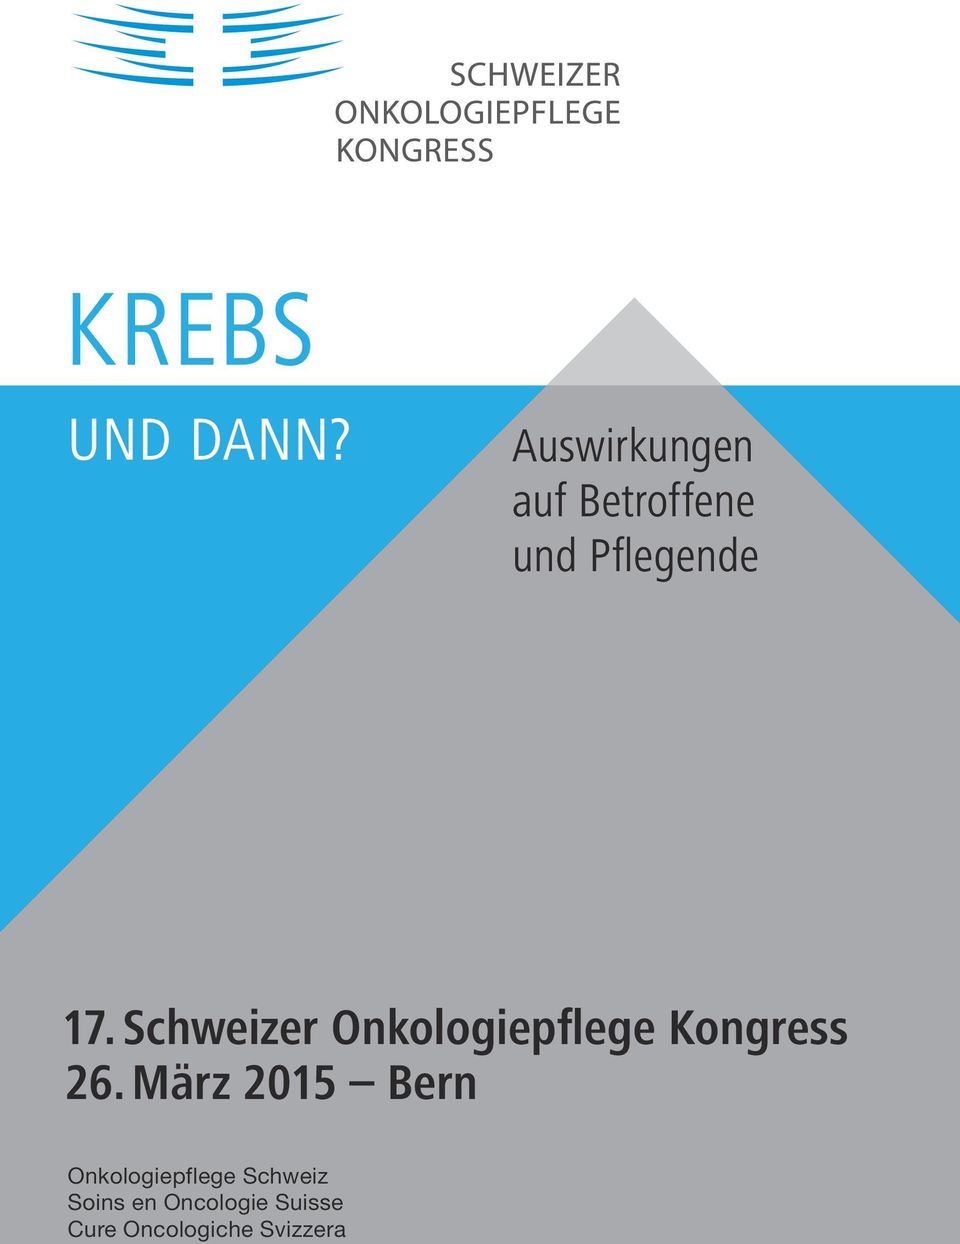 Schweizer Onkologiepflege Kongress 26.